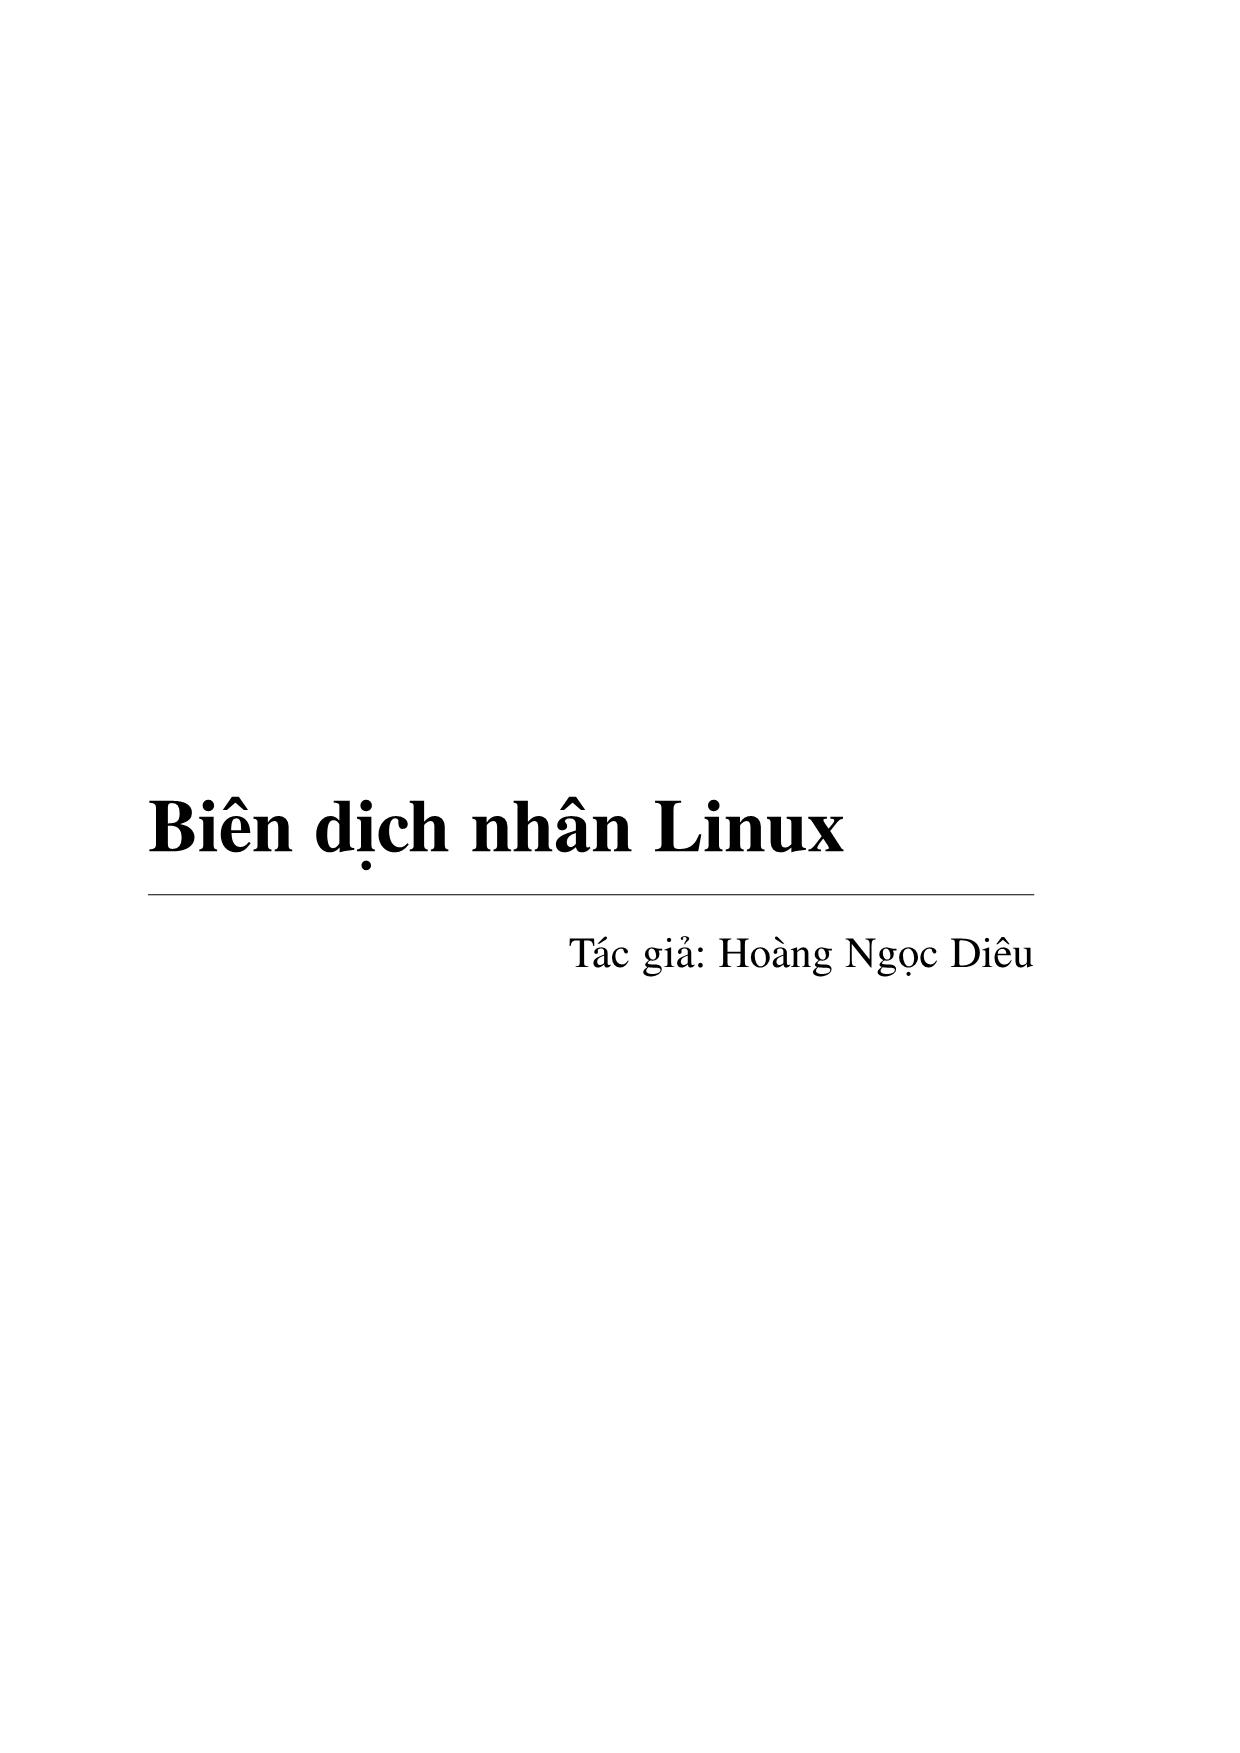 Biên dịch nhân Linux trang 2